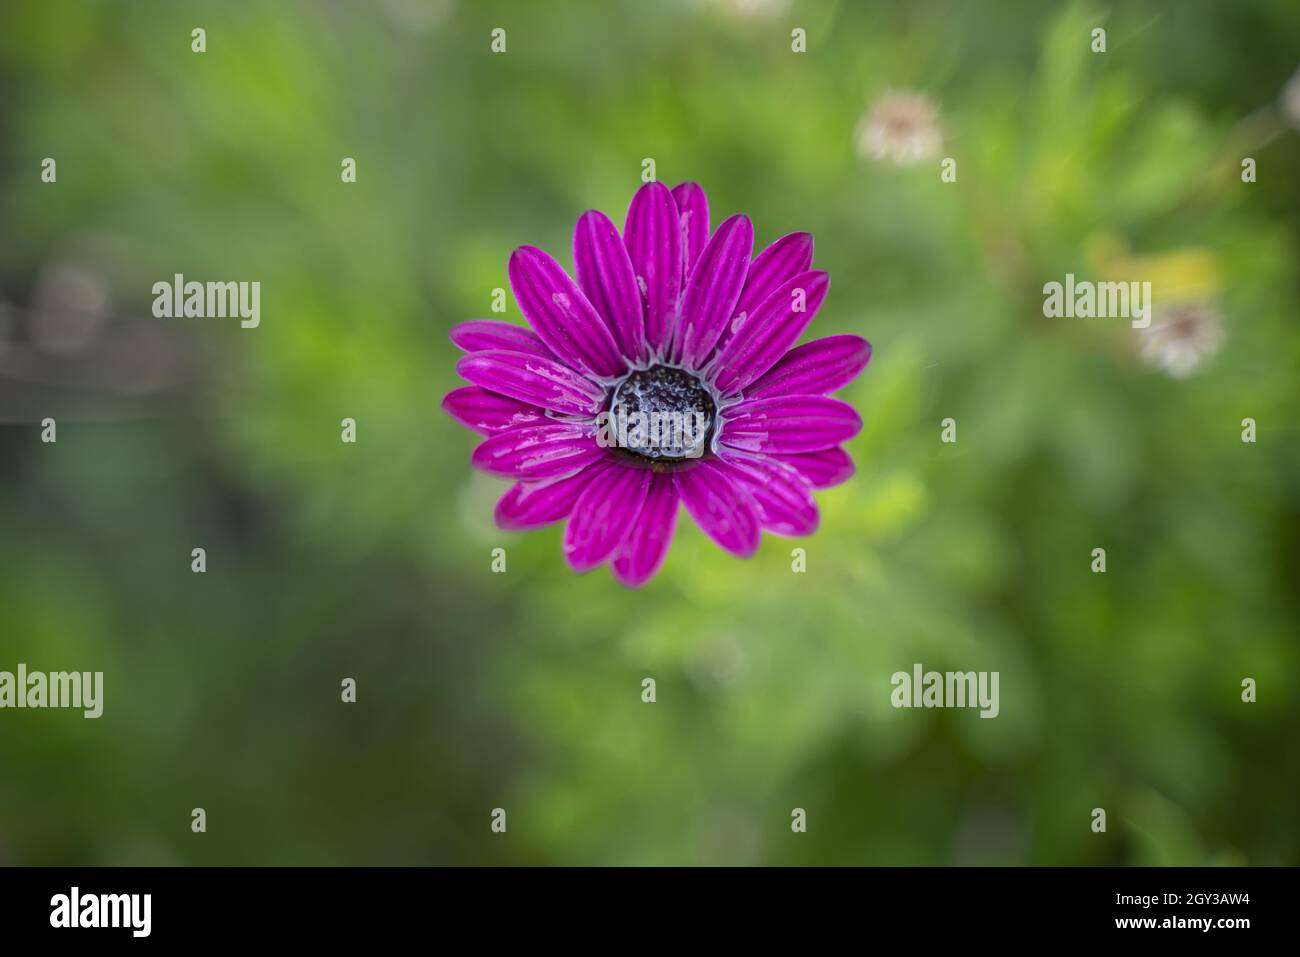 Selektive Fokusaufnahme der violetten osteospermum-Blume Stockfoto